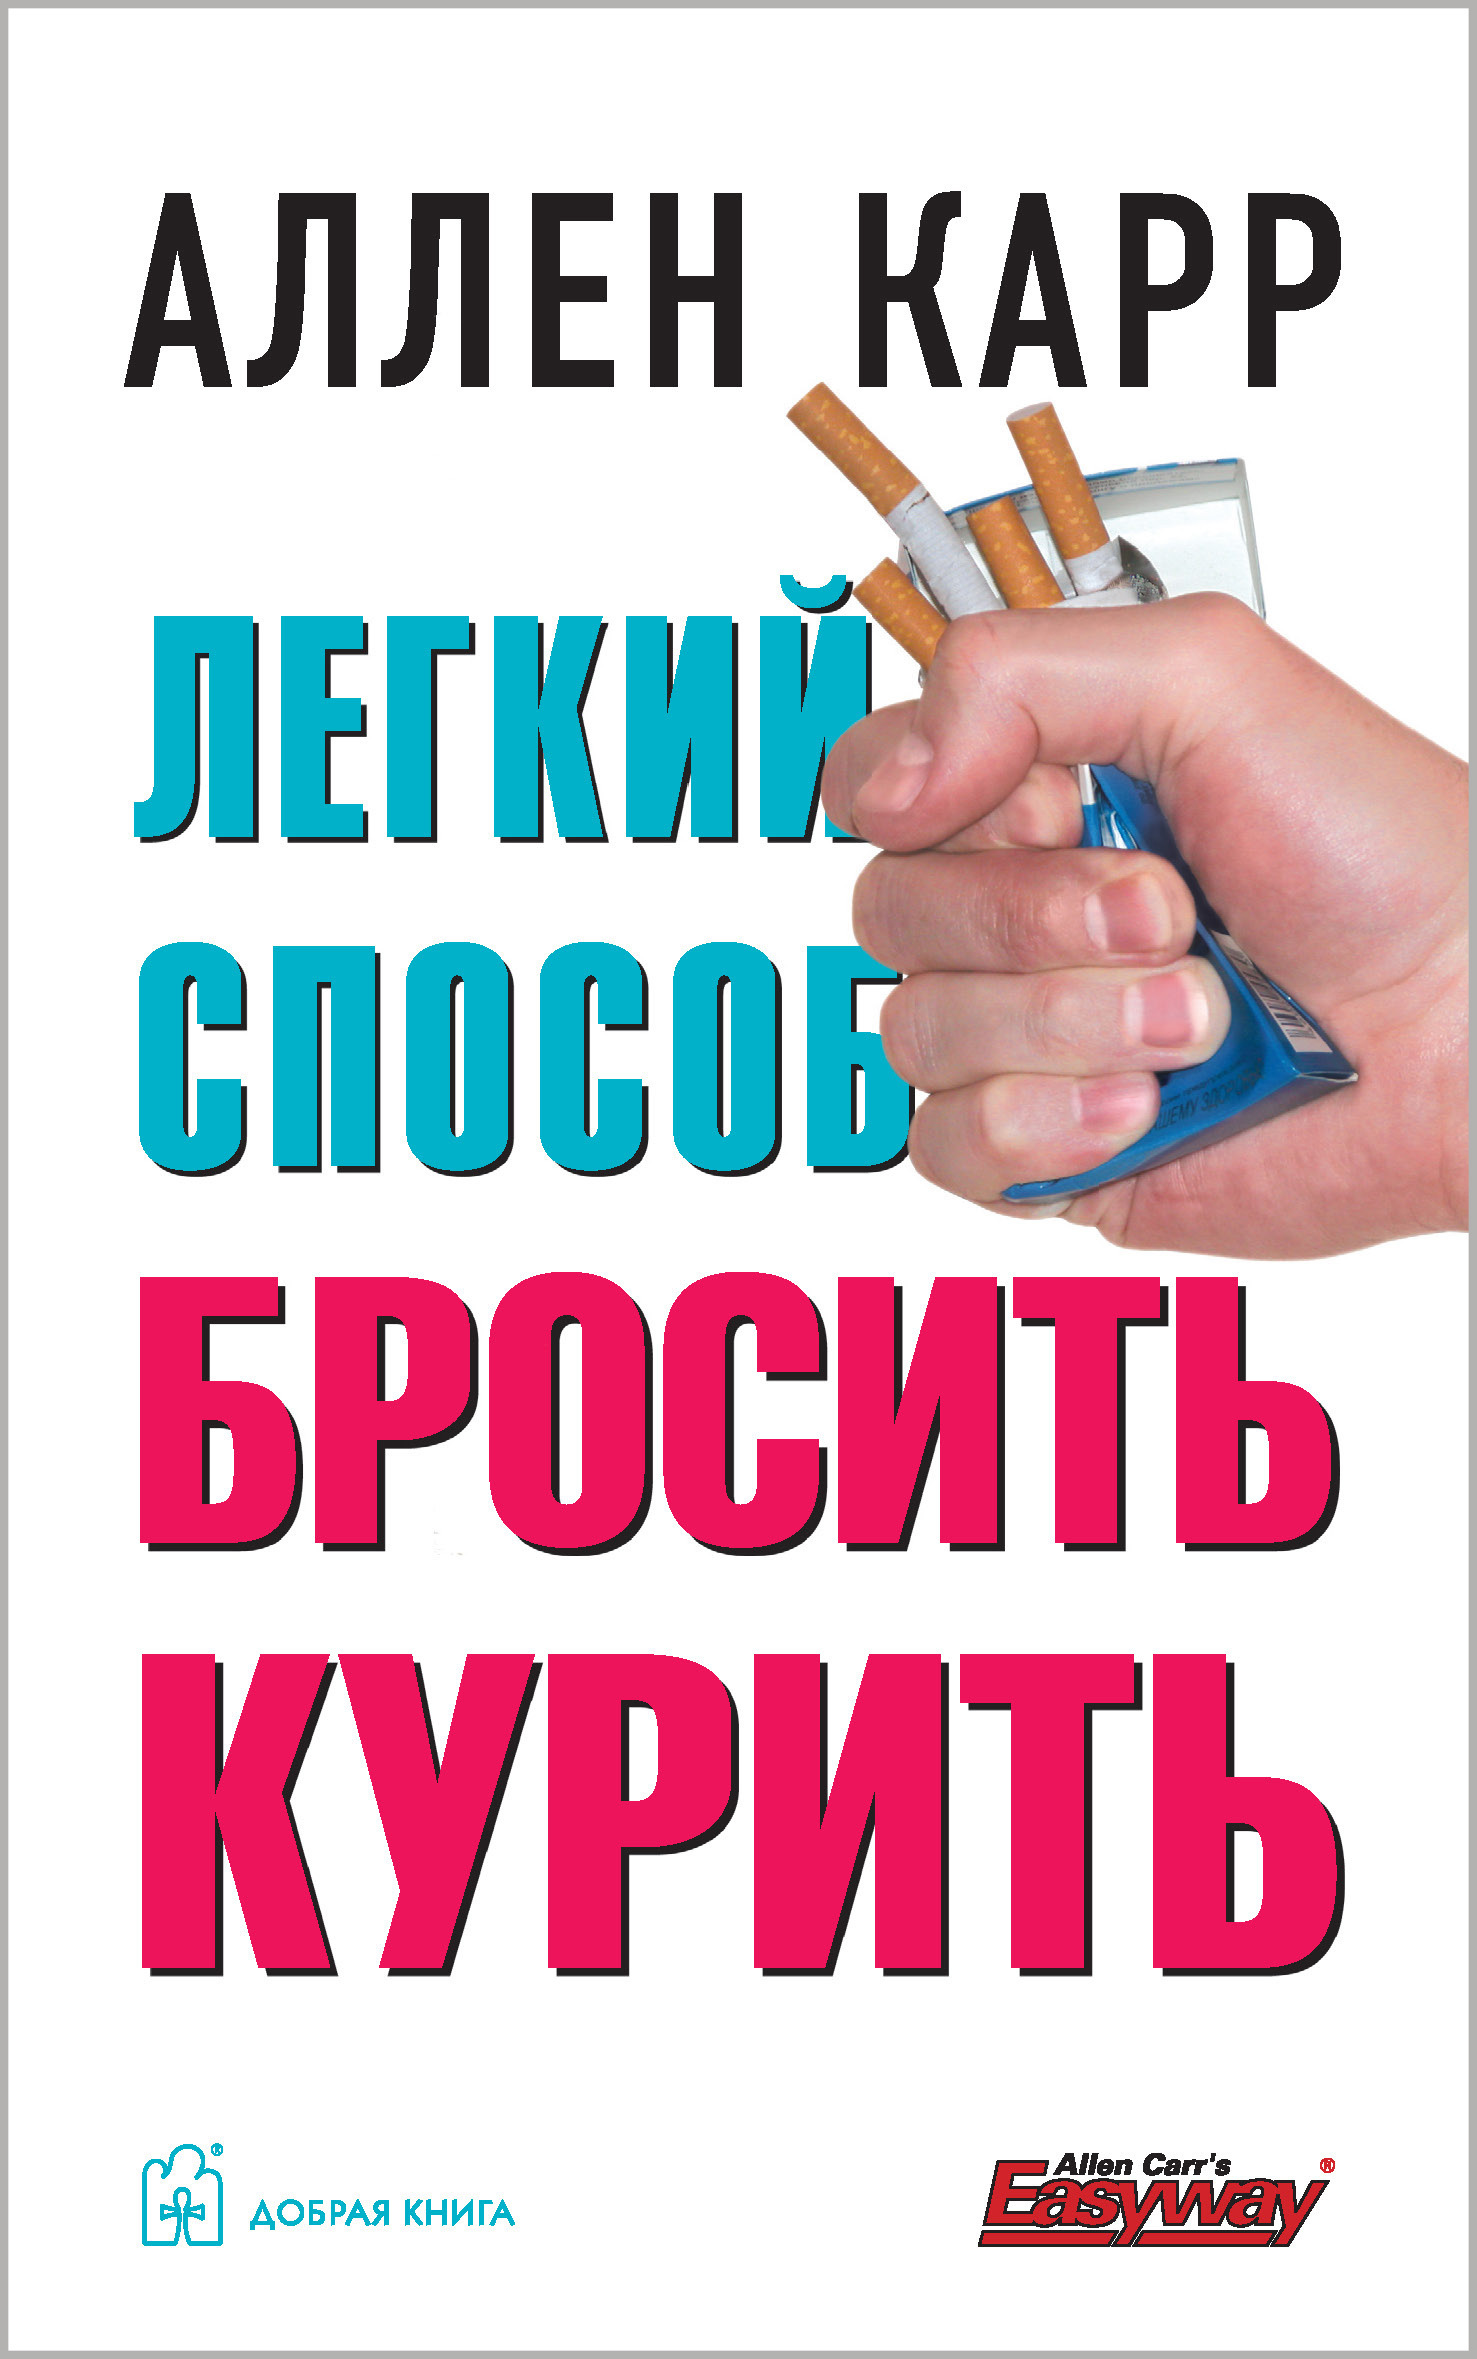 Кидать легко. Аллен карр лёгкий способ бросить курить. Аллен кариспособ курить. Легкий способ бросить курить Аллен карр книга. Книга легко способ бросить курить.